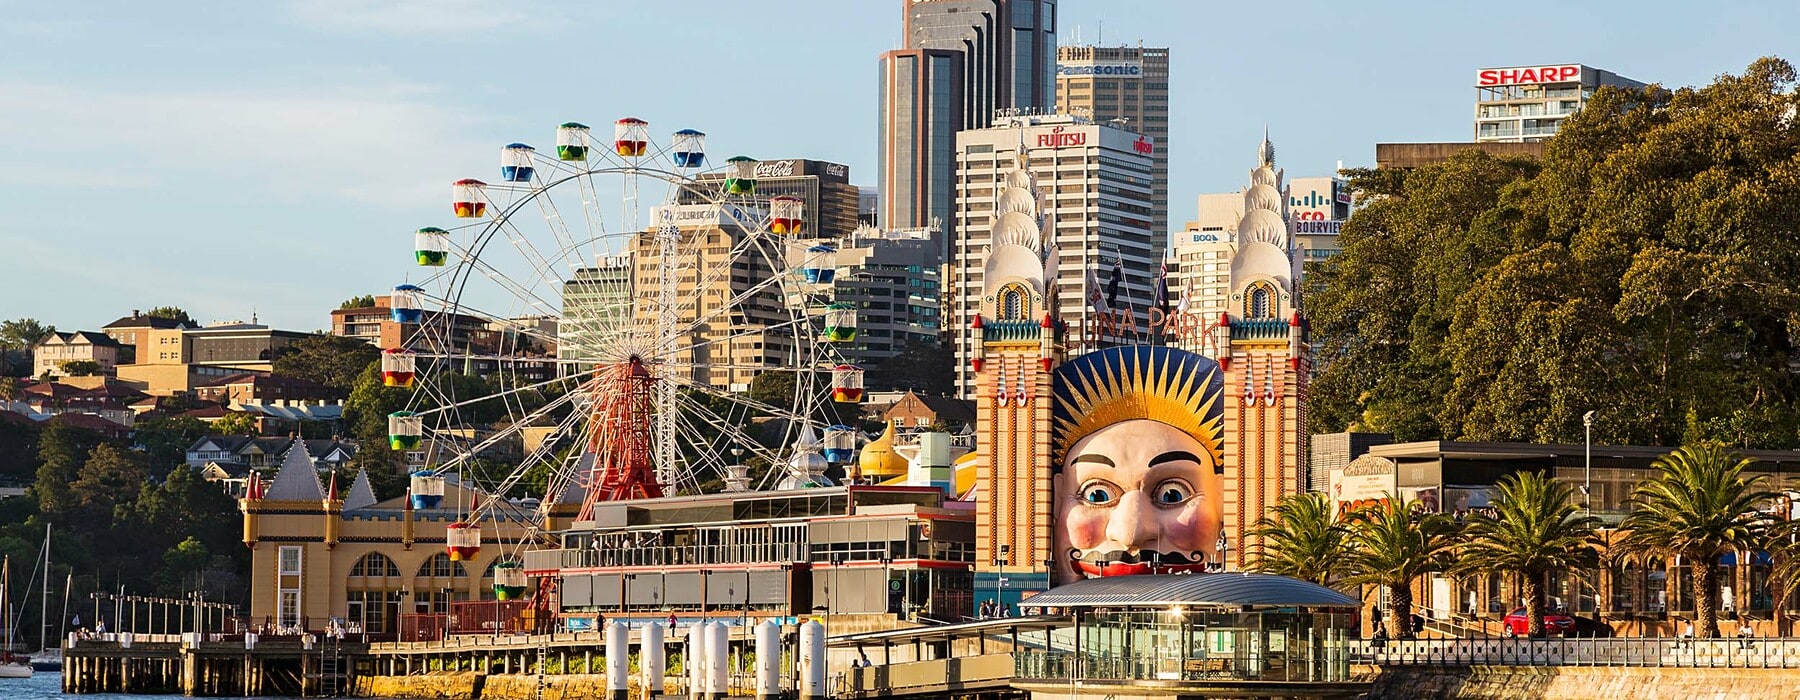 Luna Park Amusement center on north shore of Sydney Harbour under the Harbor Bridge in Australia